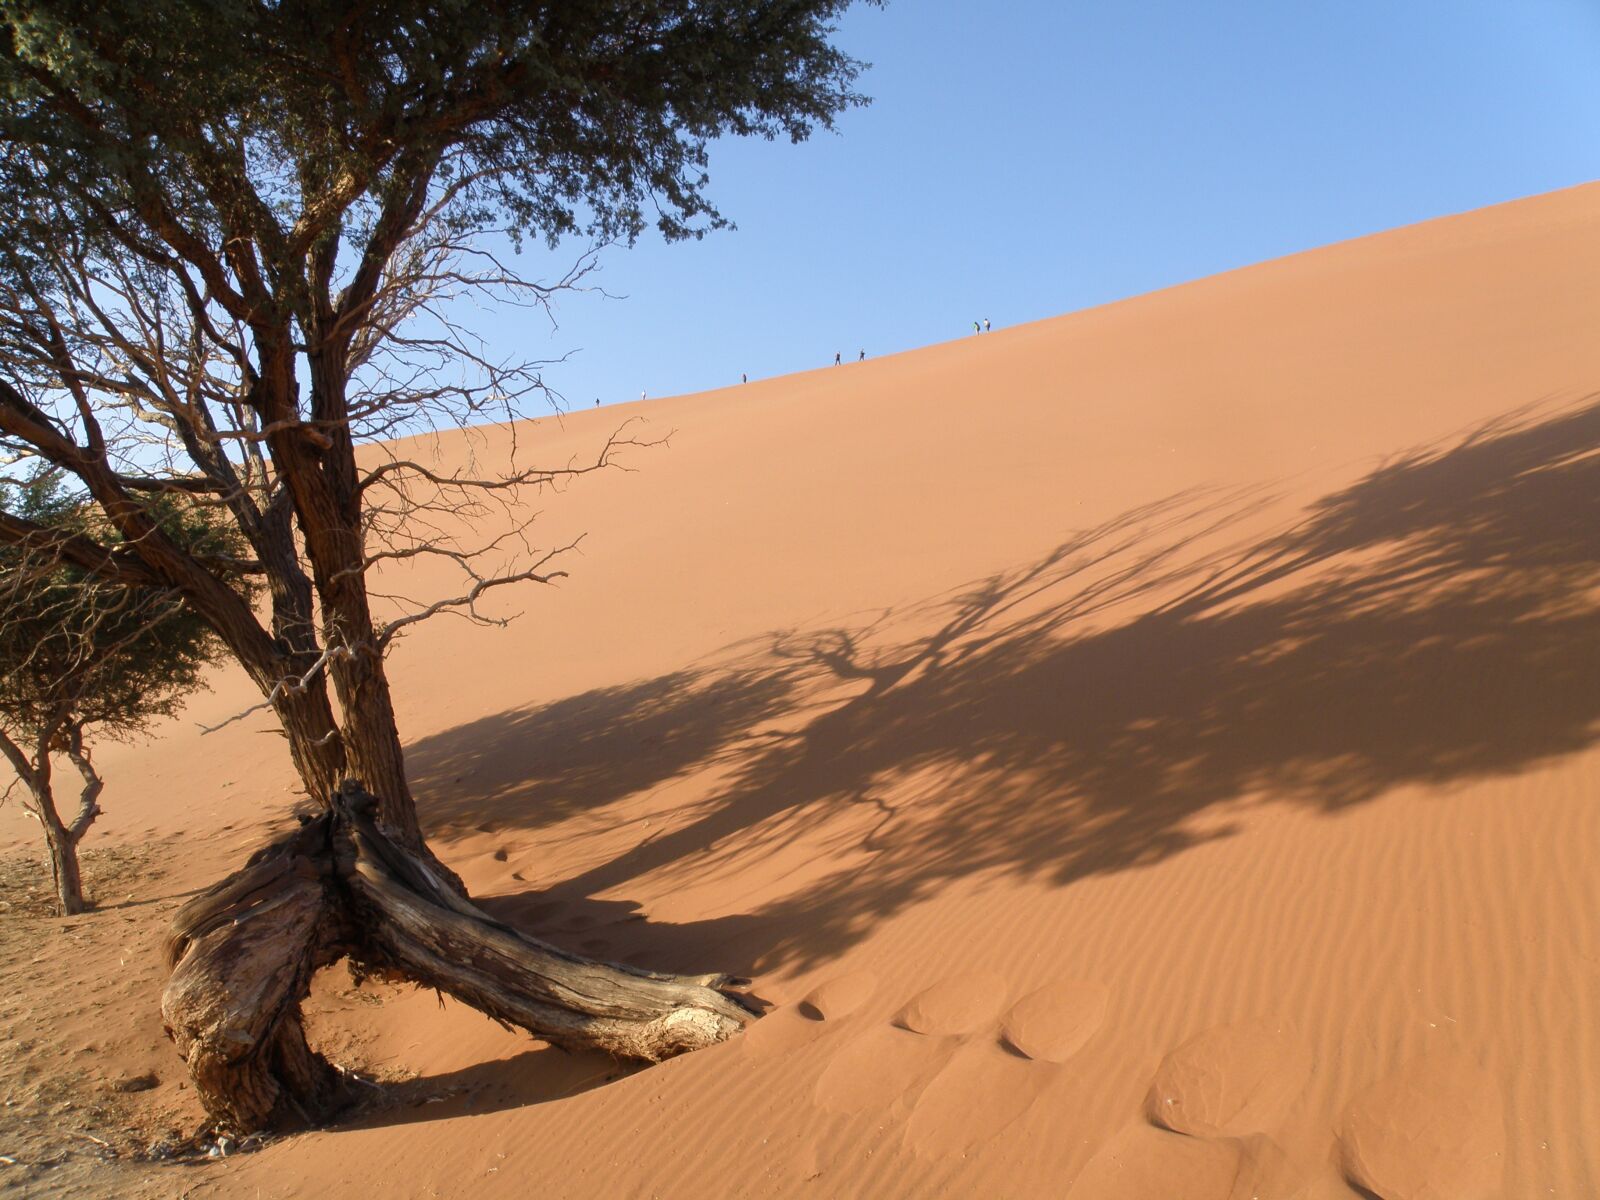 Olympus SP570UZ sample photo. Dune, namibia, desert photography